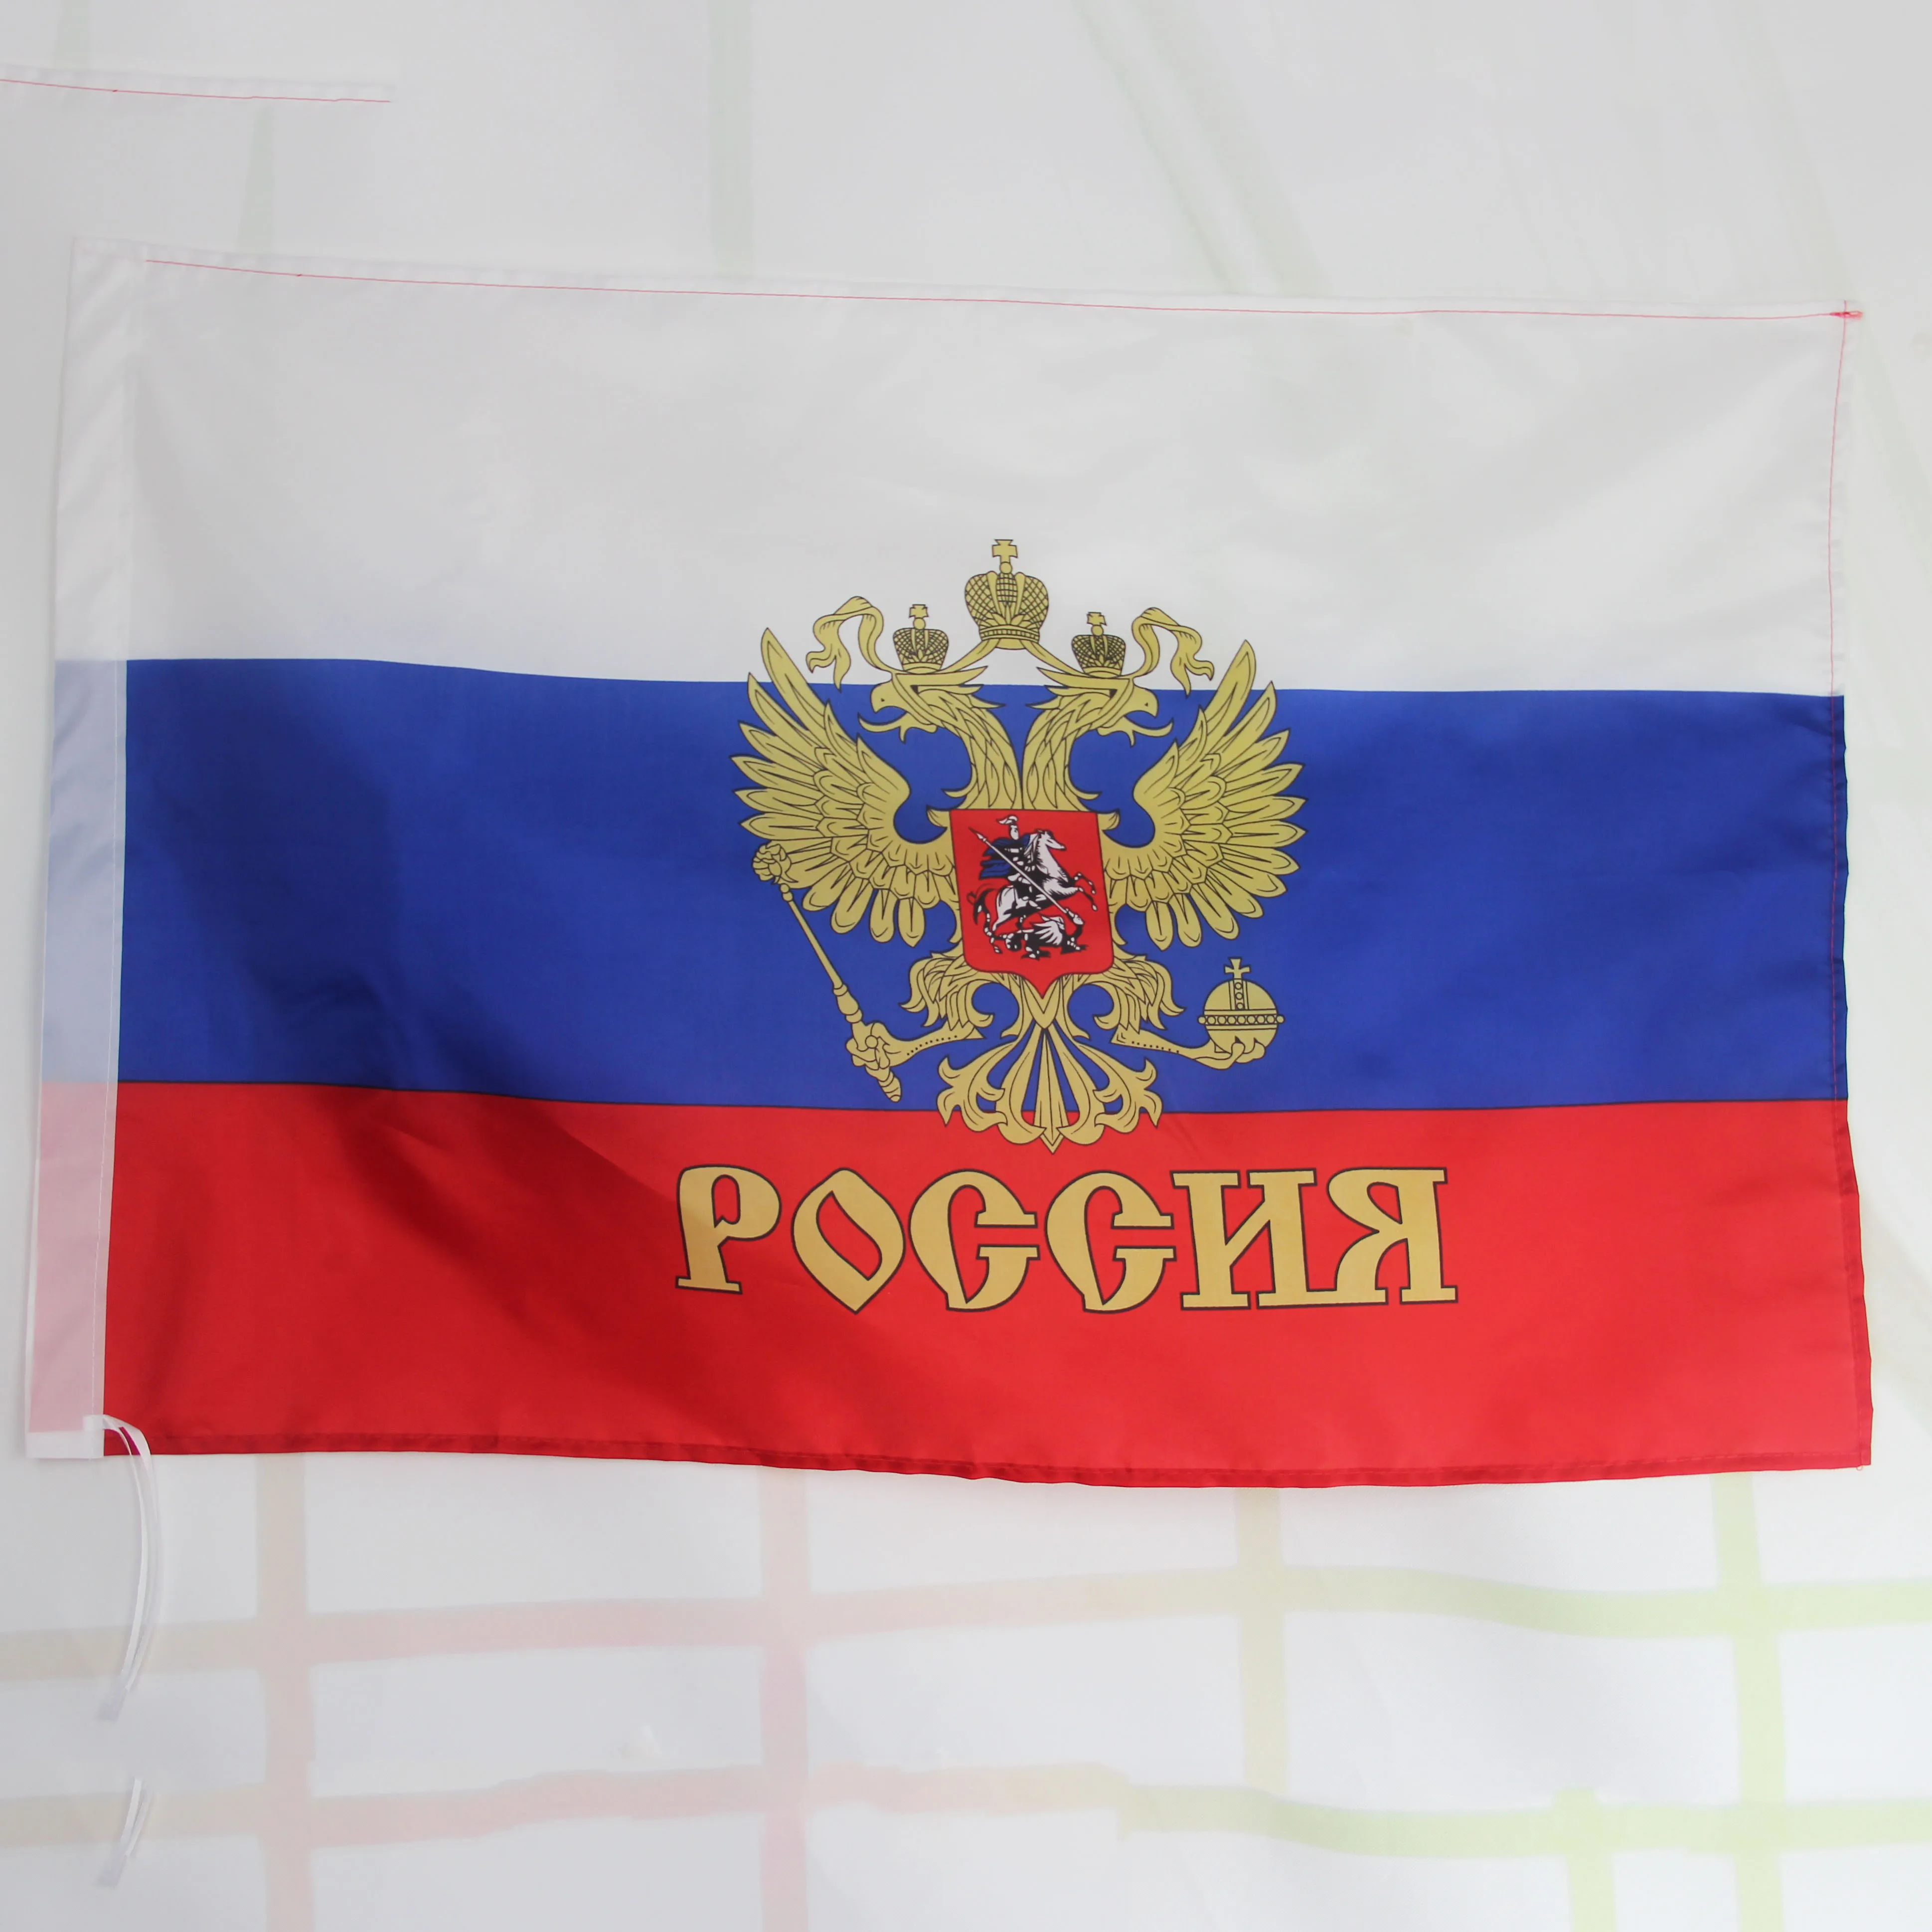 Russia State Crest Medium Hand Held Flag 23cm x 15cm